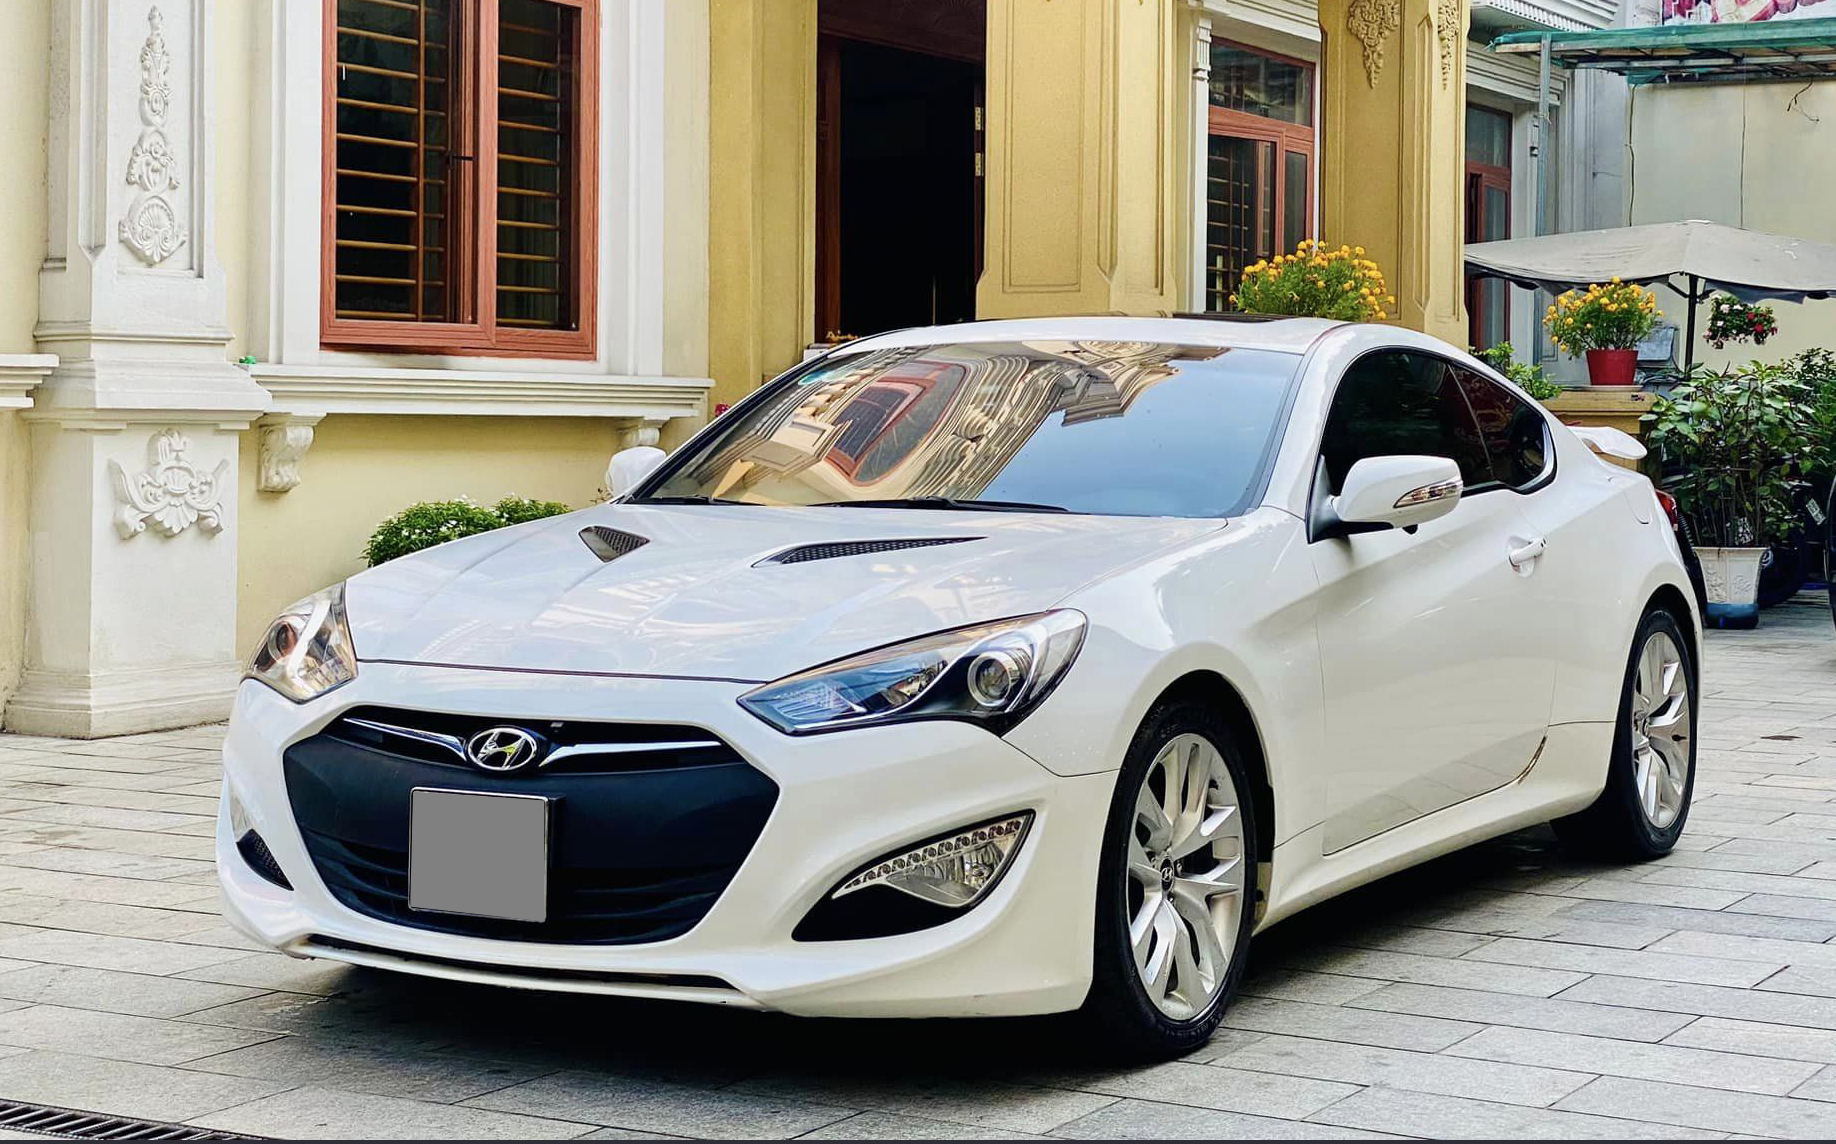 Chiếc Hyundai Genesis Coupe này giữ giá hơn Camry cùng đời: Sau 12 năm vẫn còn gần 540 triệu, mỗi năm chỉ đi hơn 2.000km- Ảnh 4.